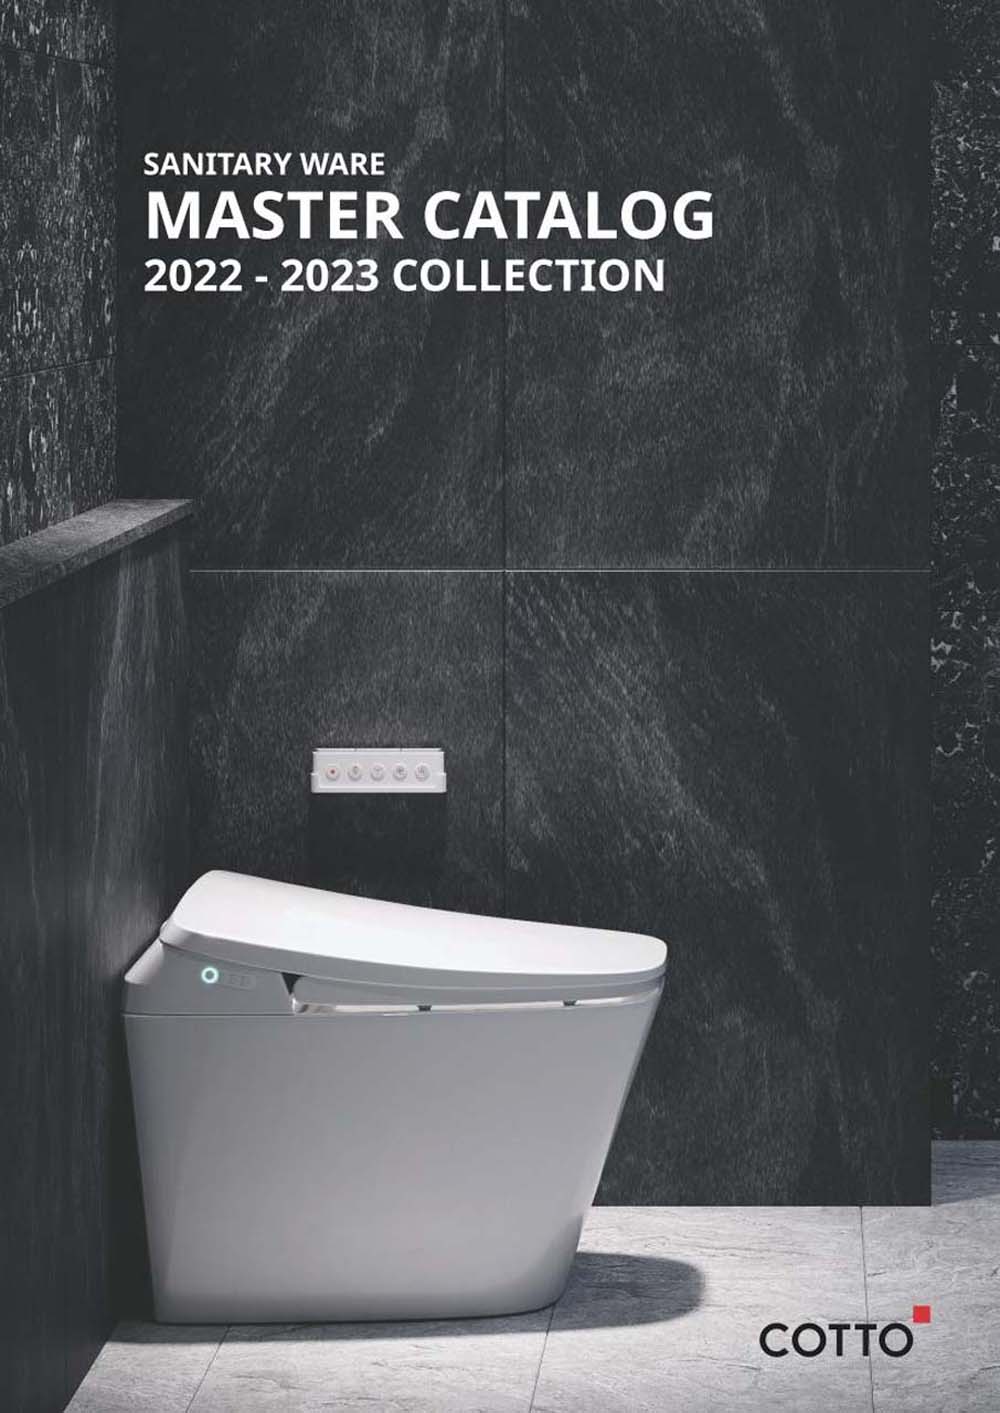 Catalogue Cotto 2023 bon cau chau lavabo tieu nam. vuathietbi.com 1